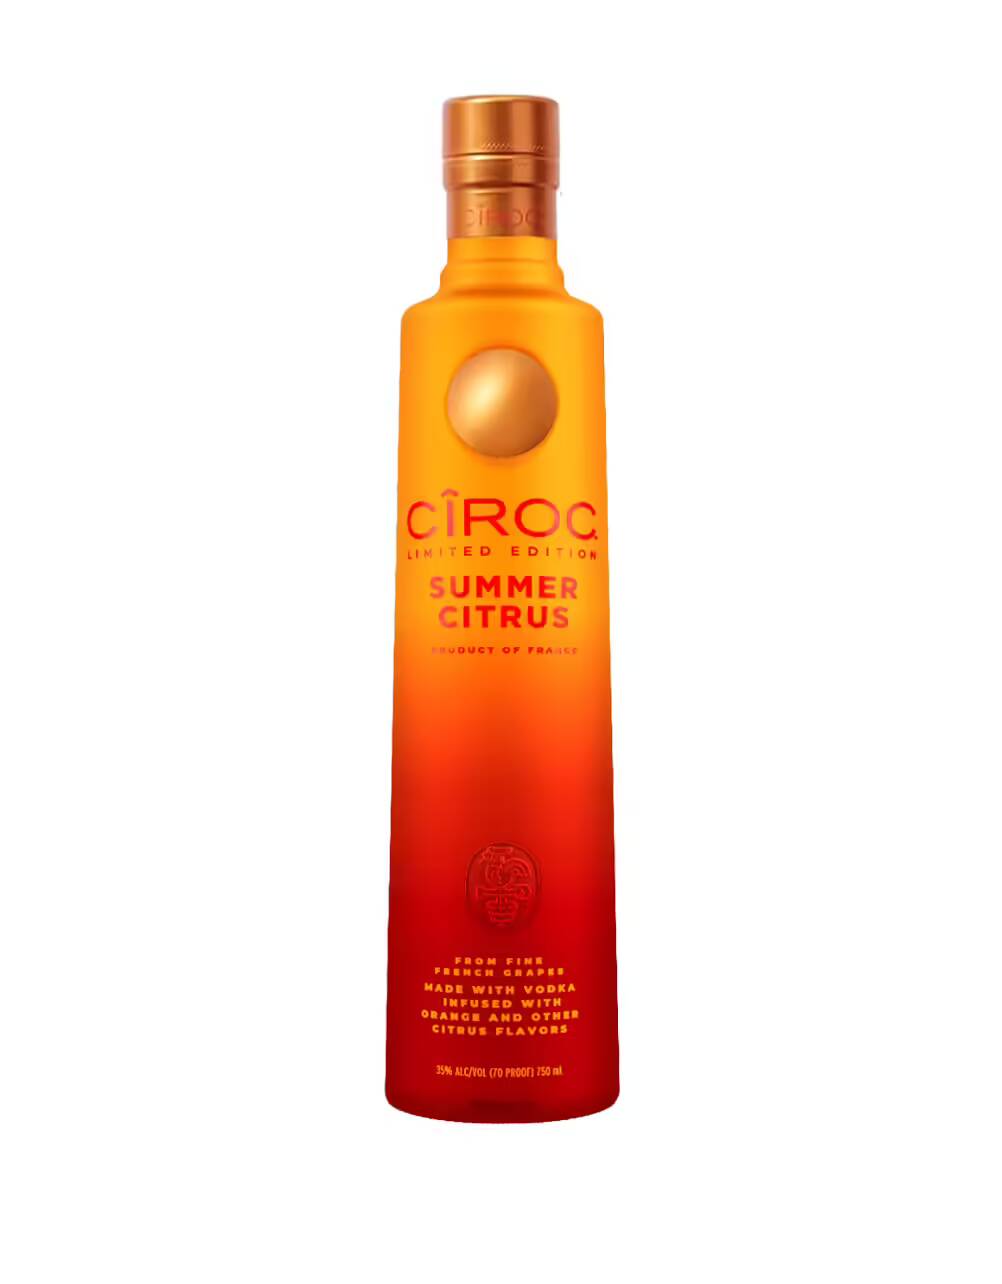 CIROC Summer Citrus Limited Edition Vodka